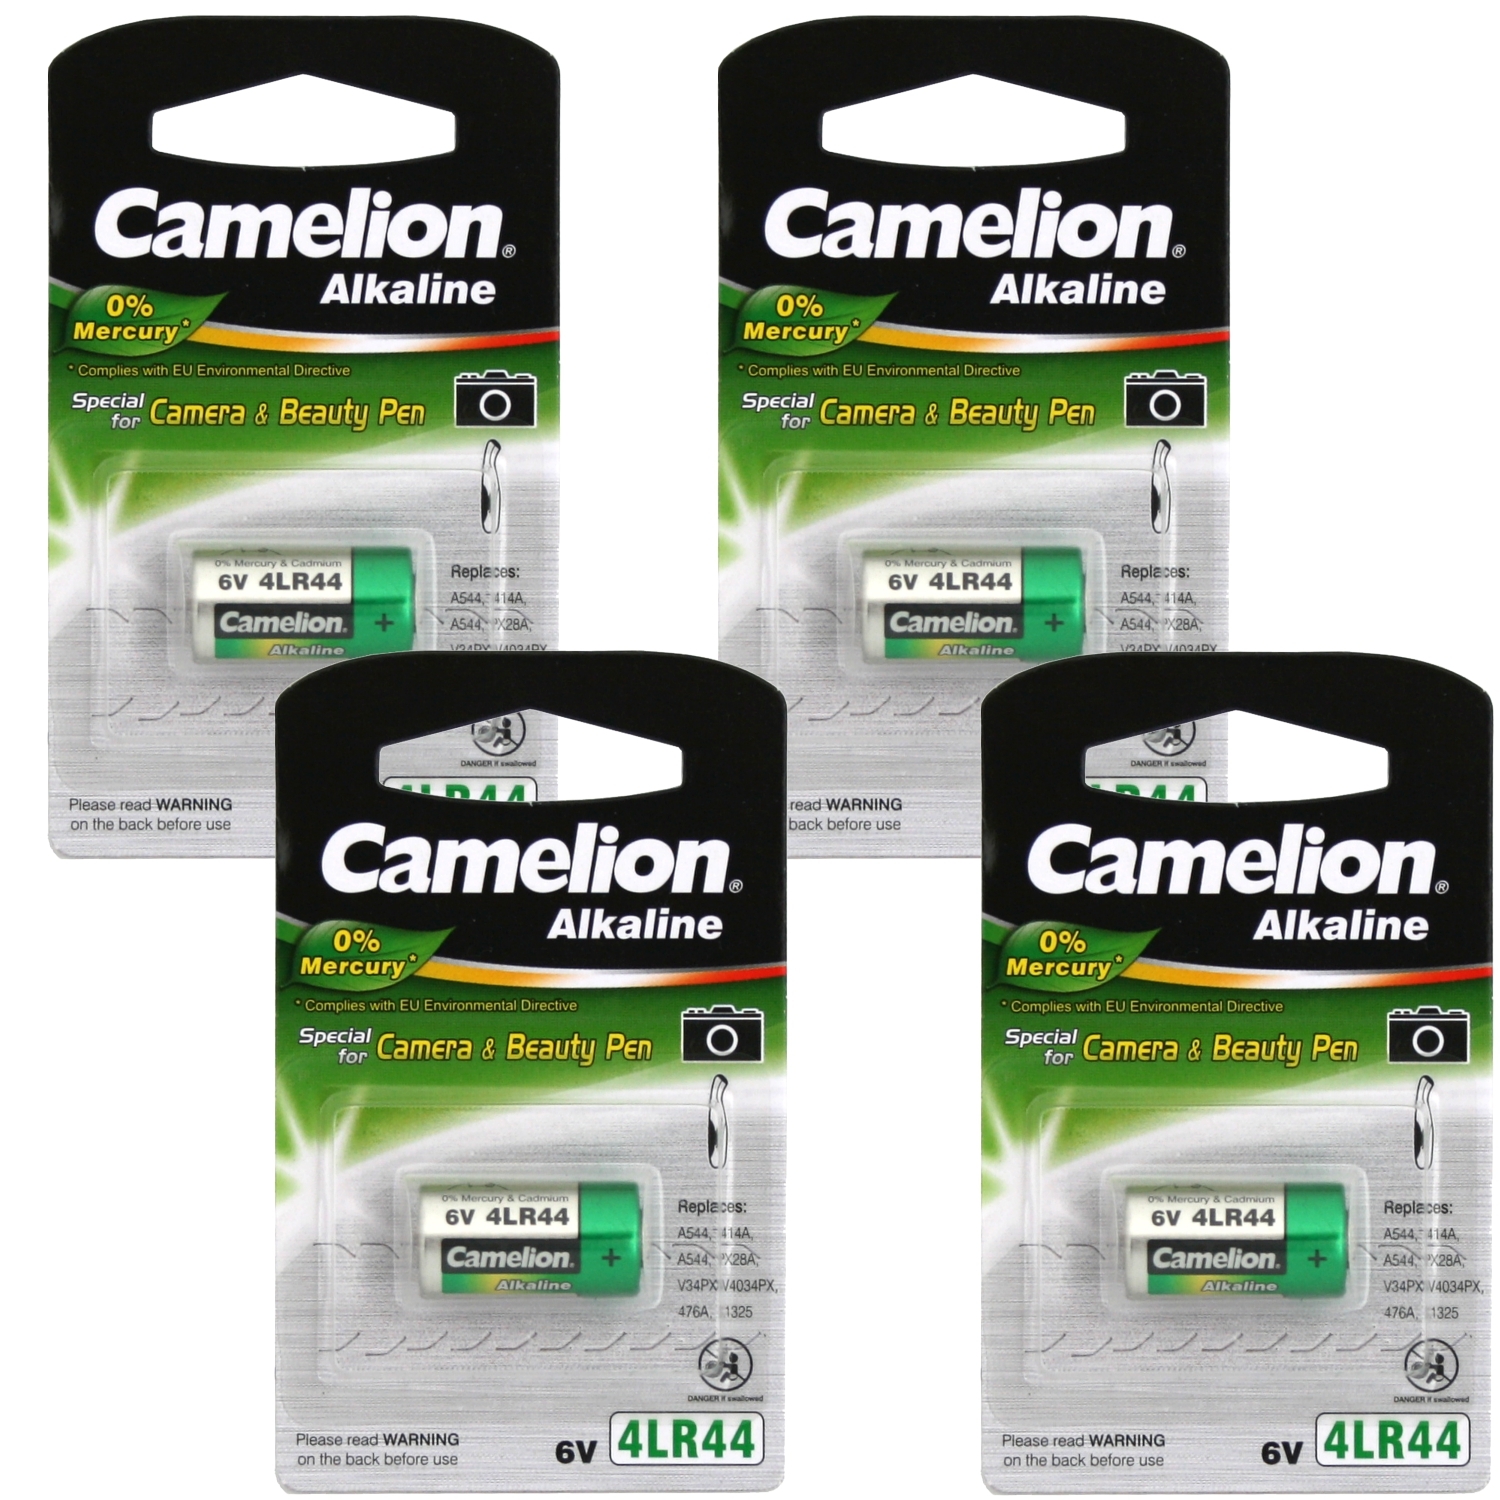 4x Packung CAMELION Plus Alkaline Kamera Batterie 4LR44 6V A544